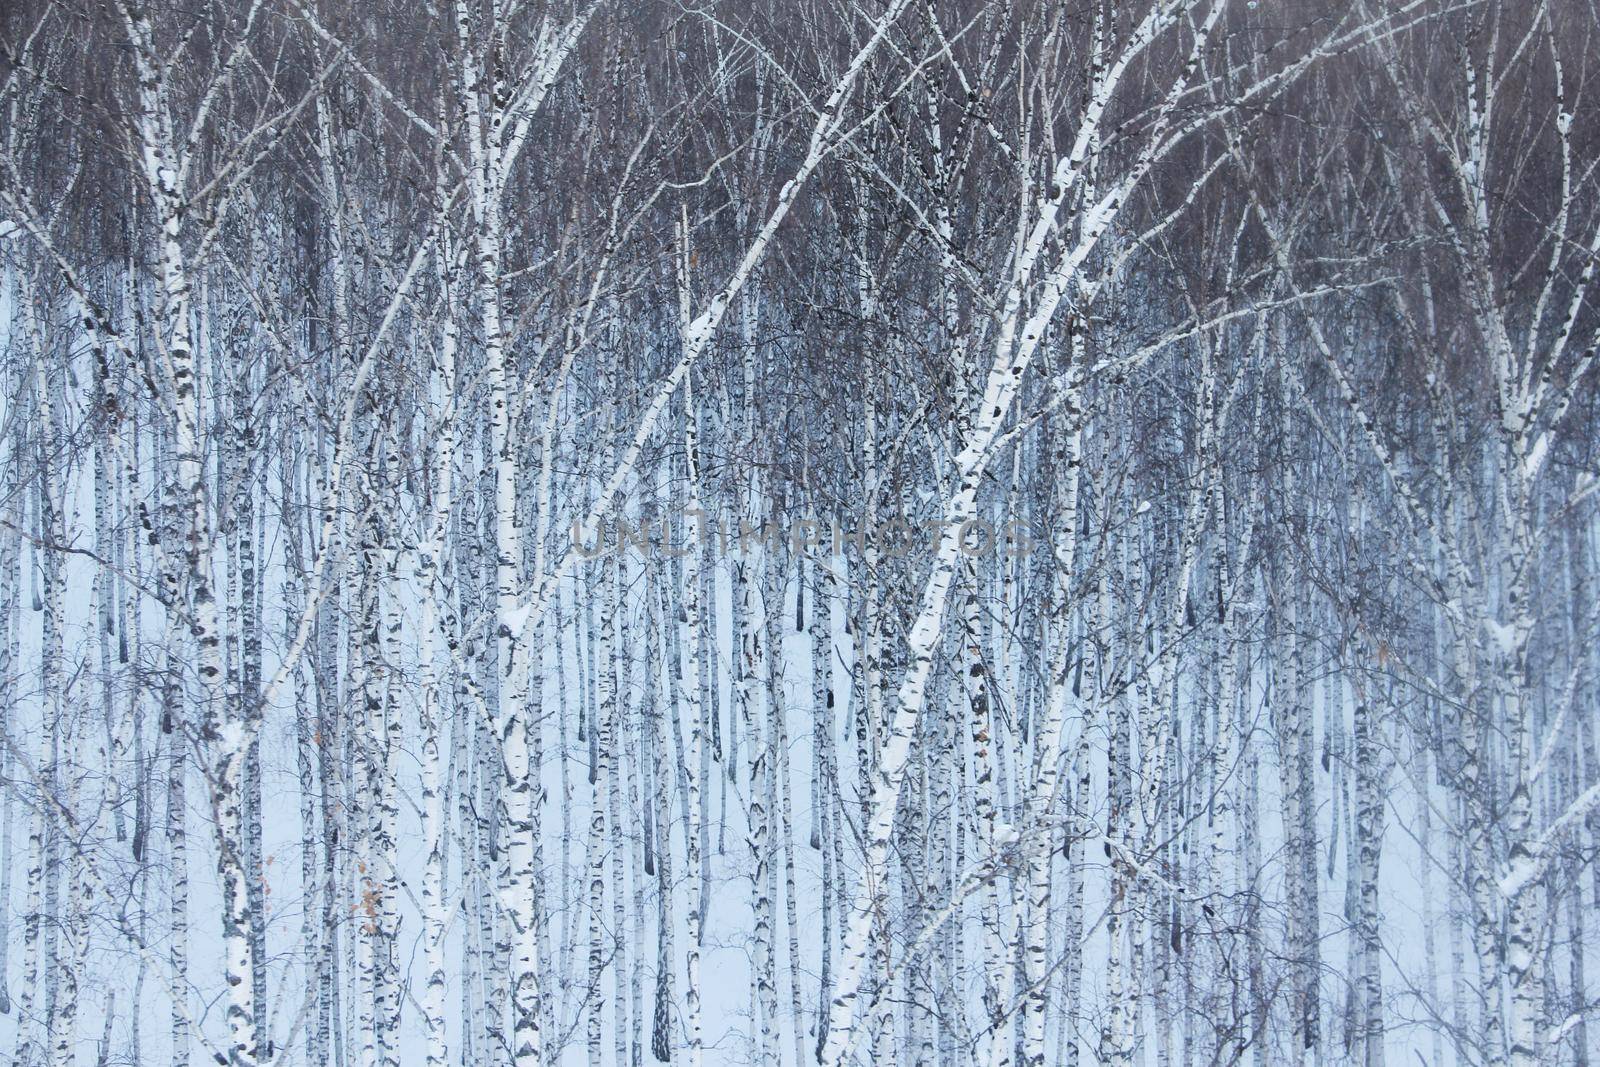 Birch forest in snow by destillat